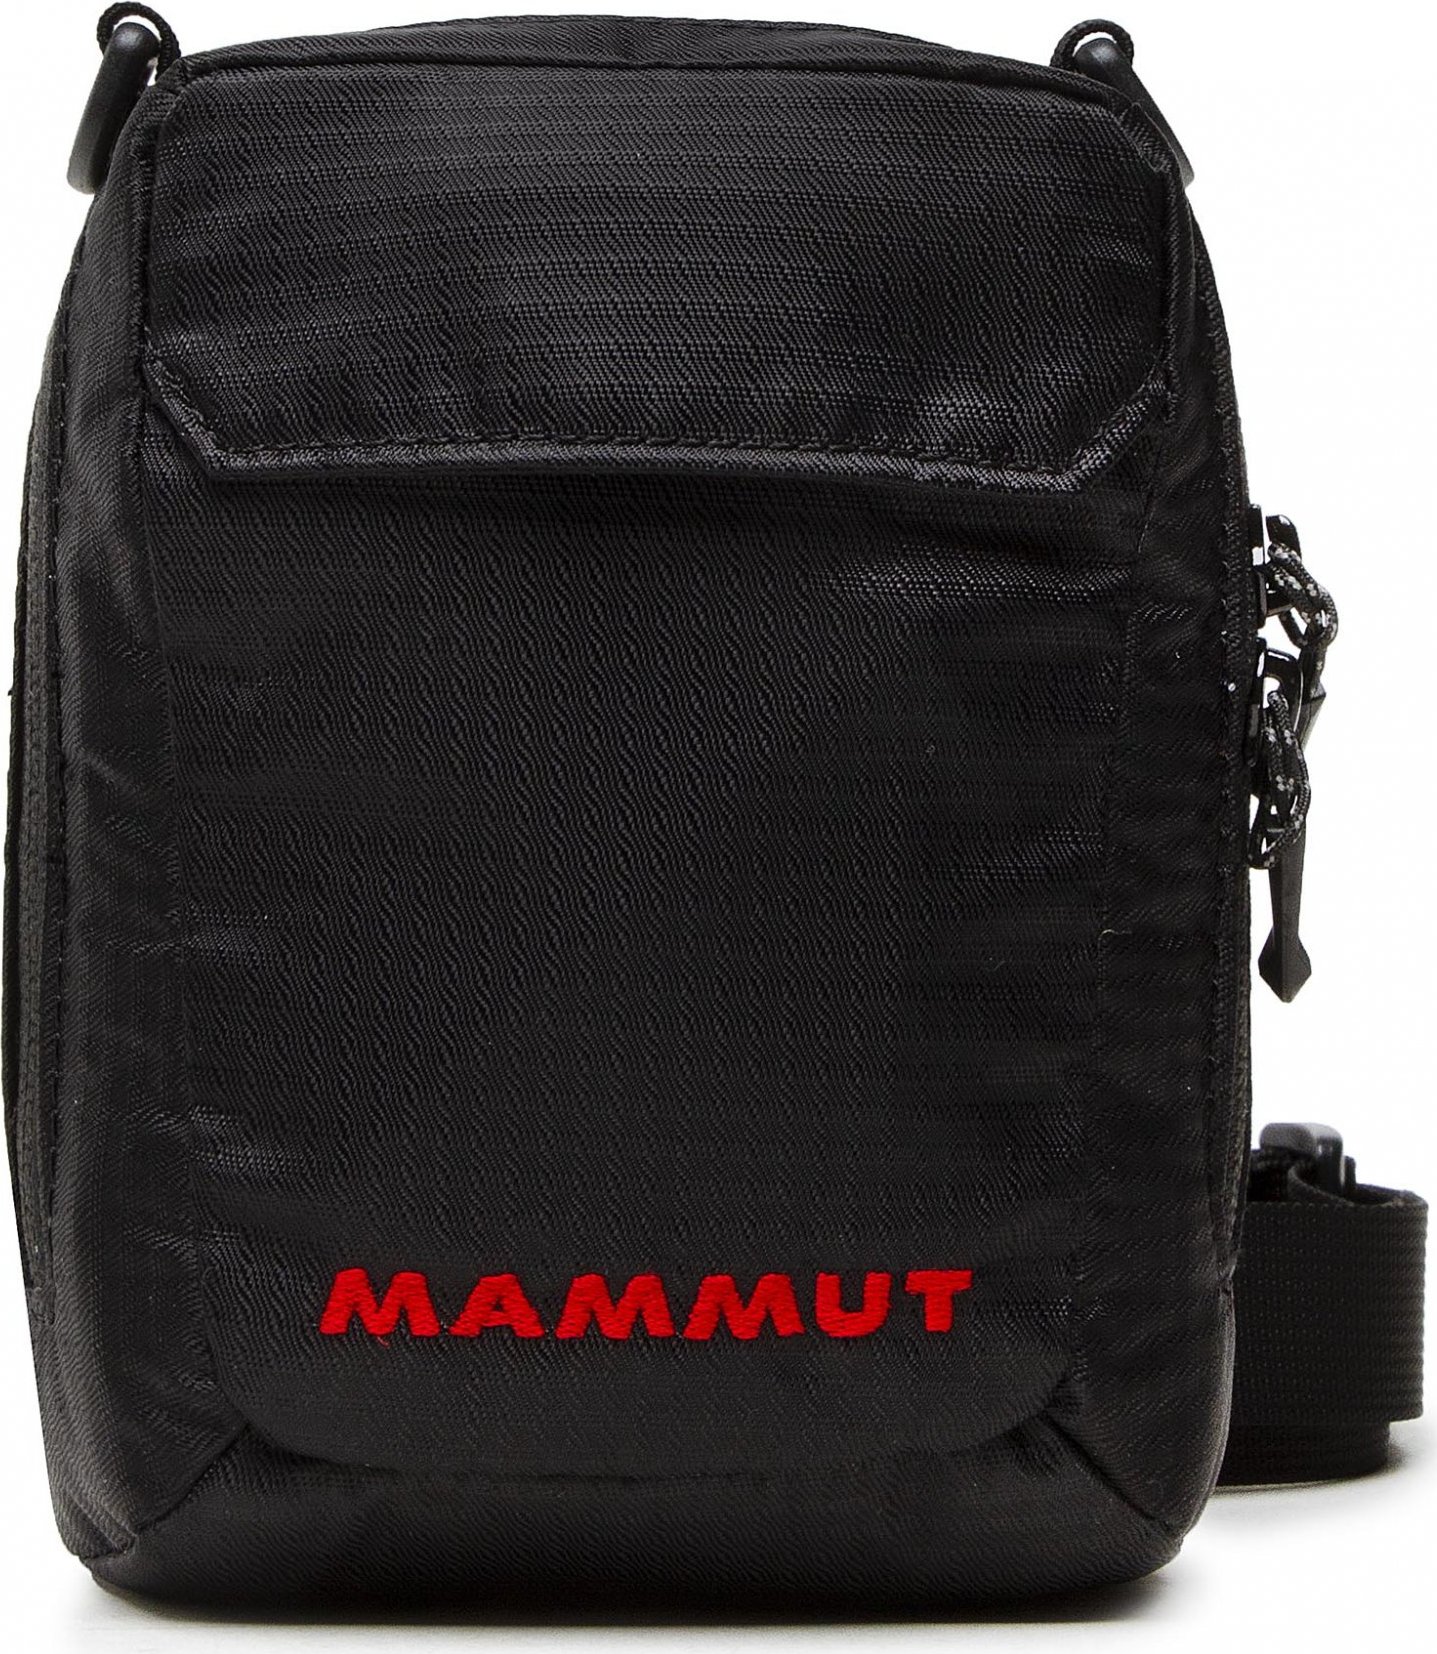 Mammut Tasch Pouch 2520-00131-0001-1010